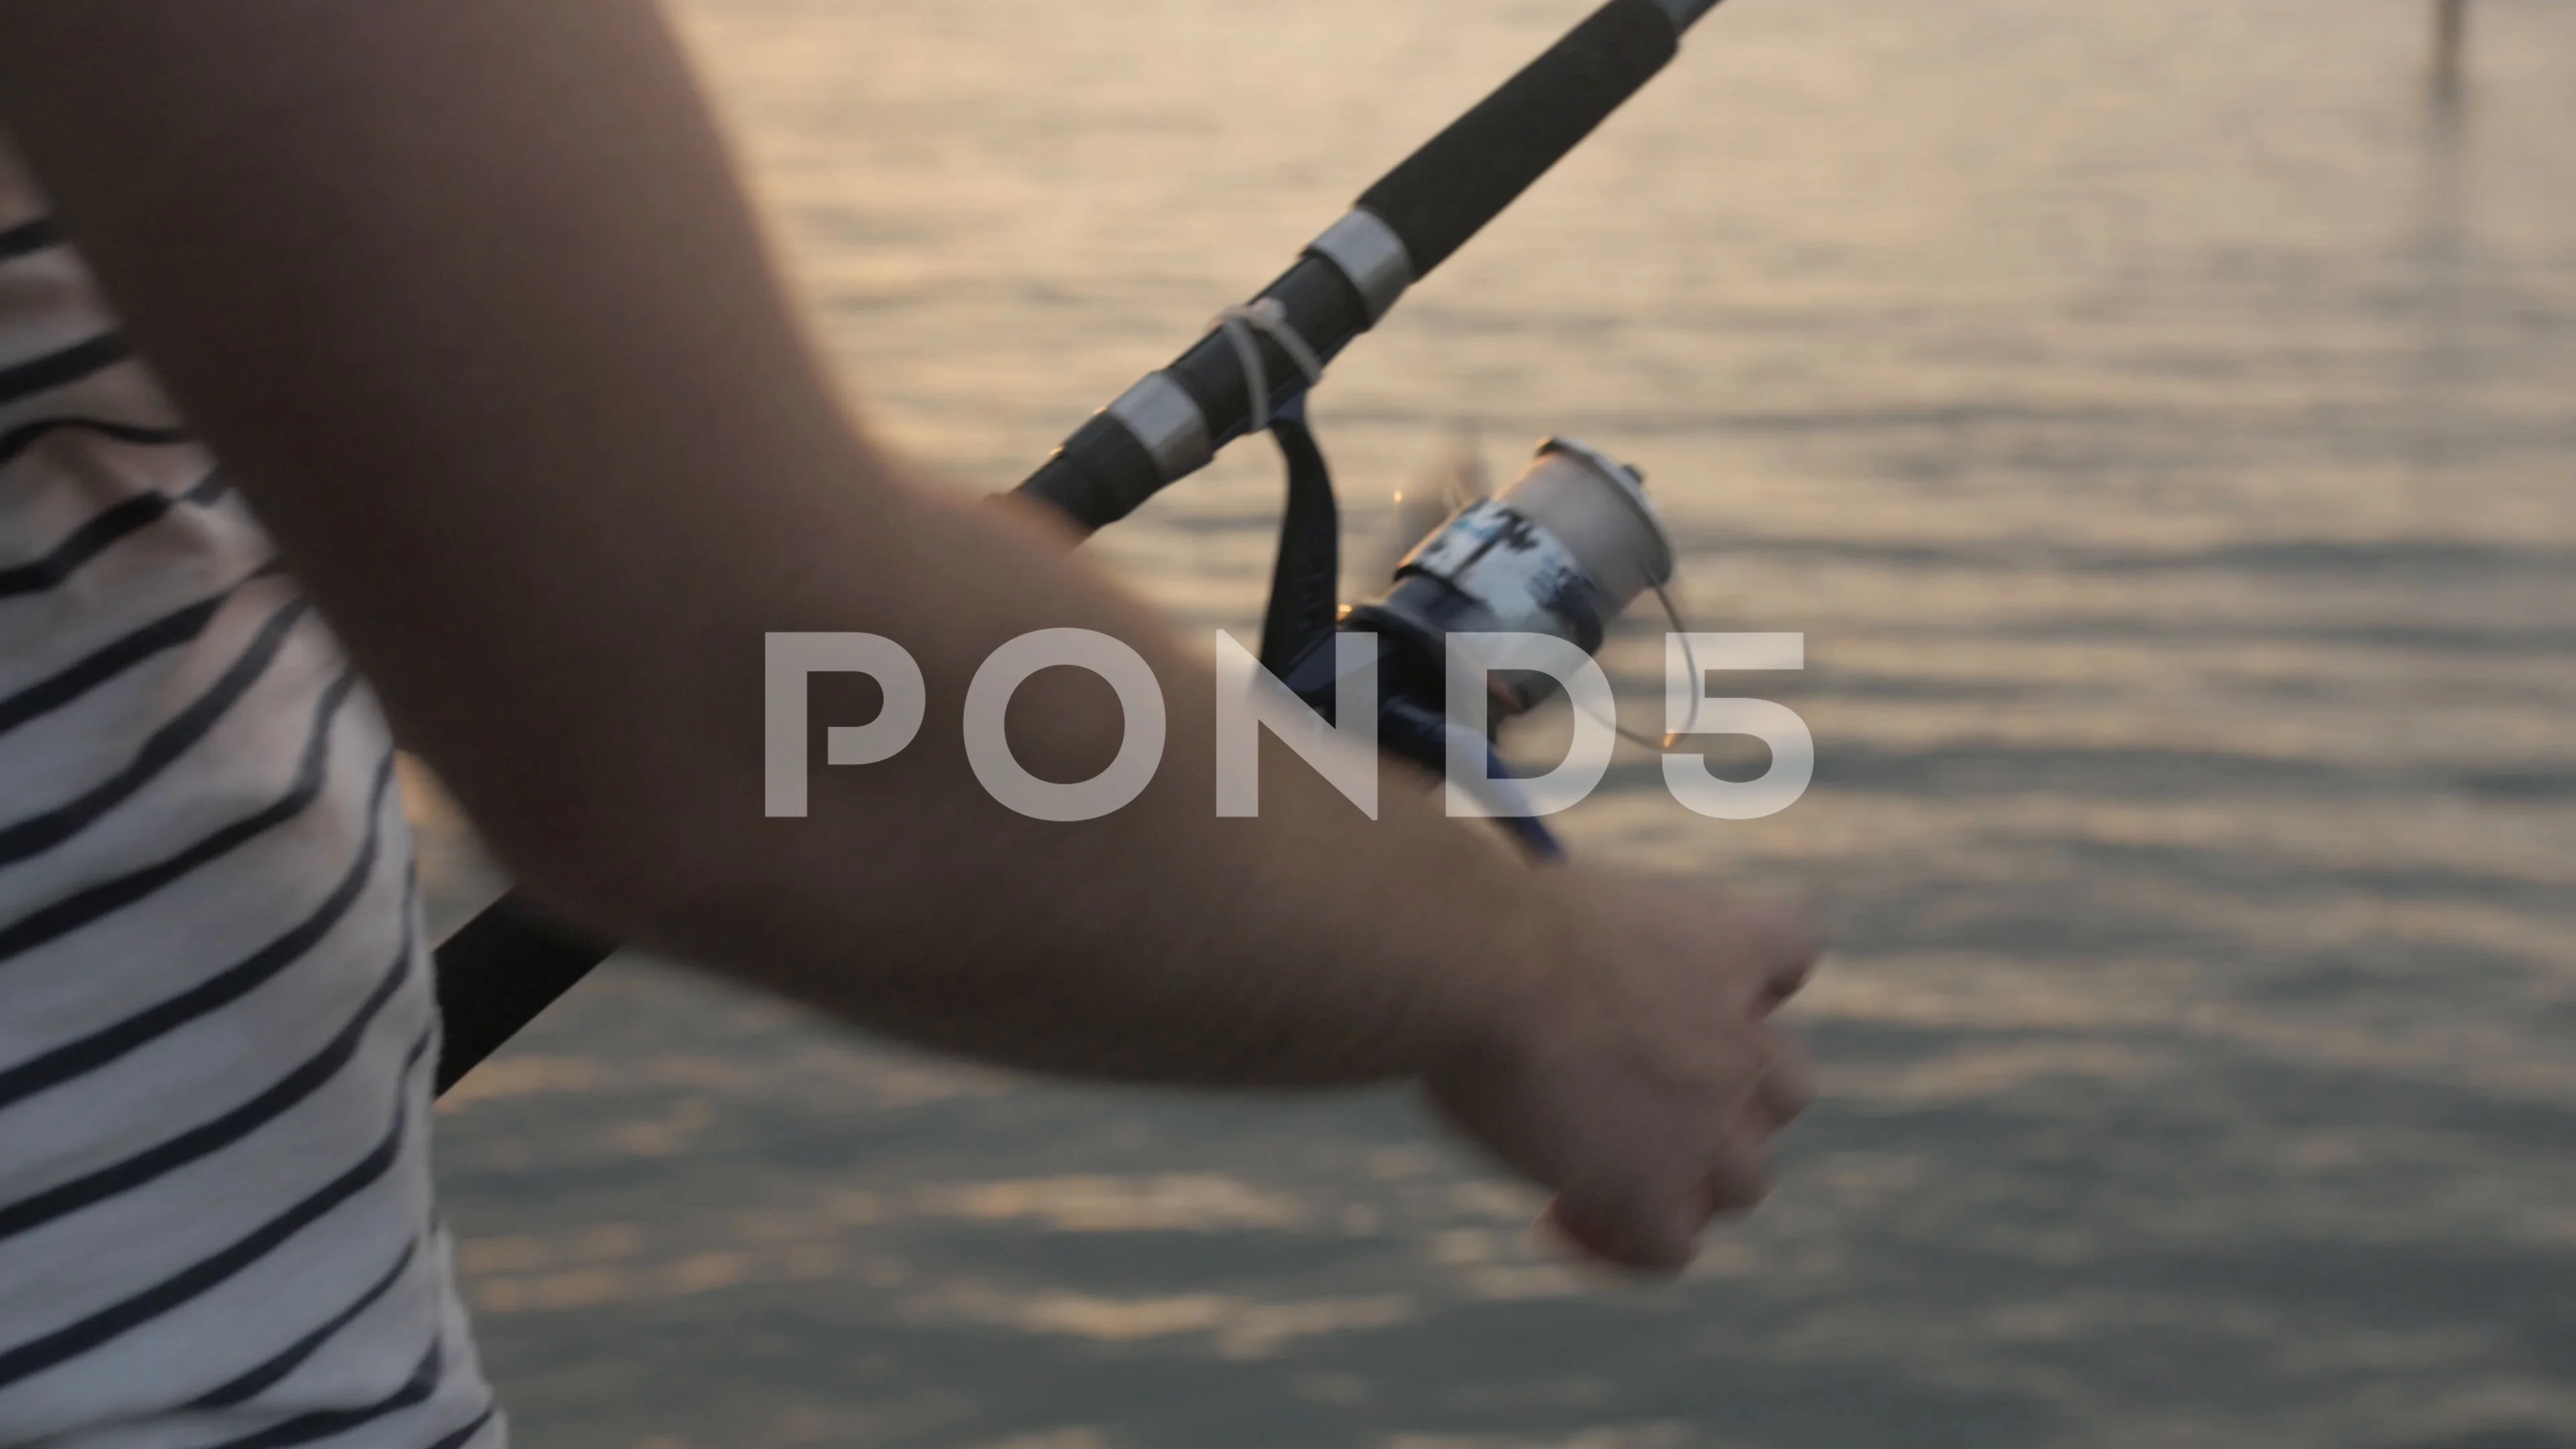 https://images.pond5.com/young-man-reeling-fishing-line-footage-094706732_prevstill.jpeg